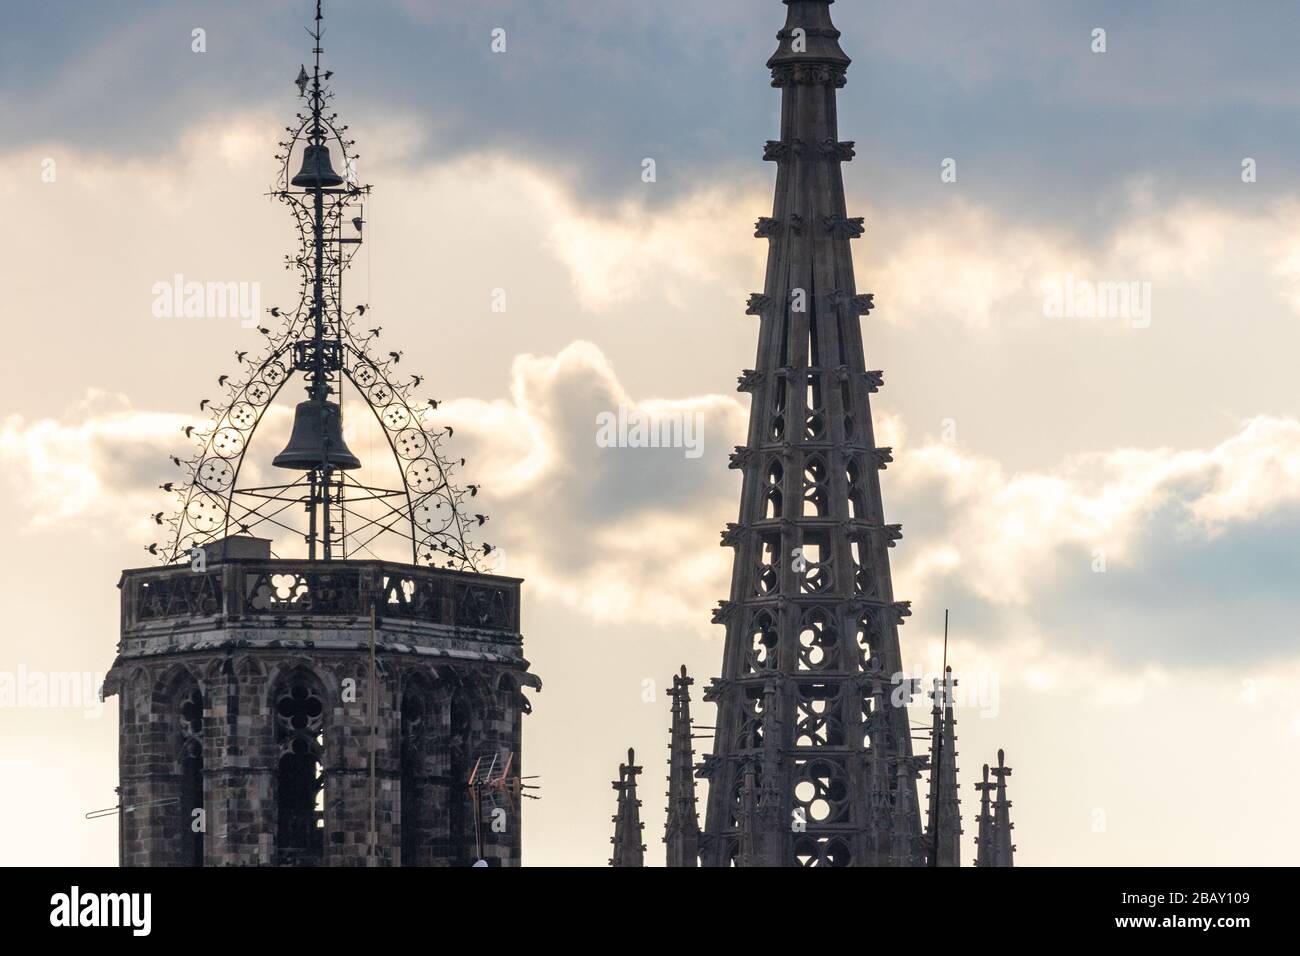 Toit isolé de la cathédrale de Barcelone dans le quartier gothique entouré de nuages Banque D'Images